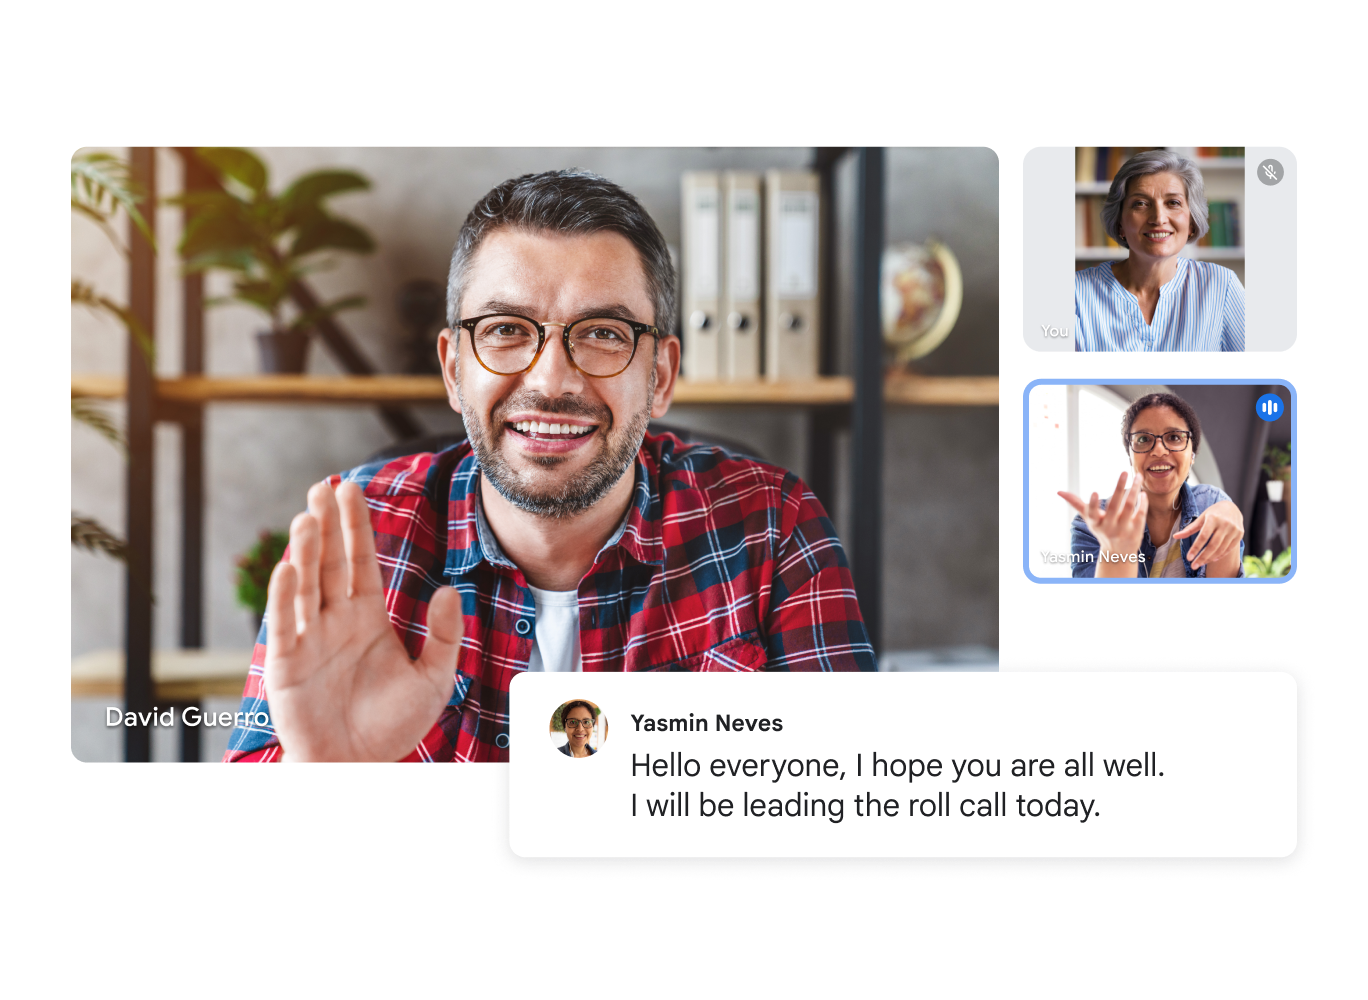 Videochiamata di Google Meet che mostra tre utenti, con una trascrizione in tempo reale che dice: "Salve a tutti, spero che stiate tutti bene. Oggi sarò io a fare l'appello." 